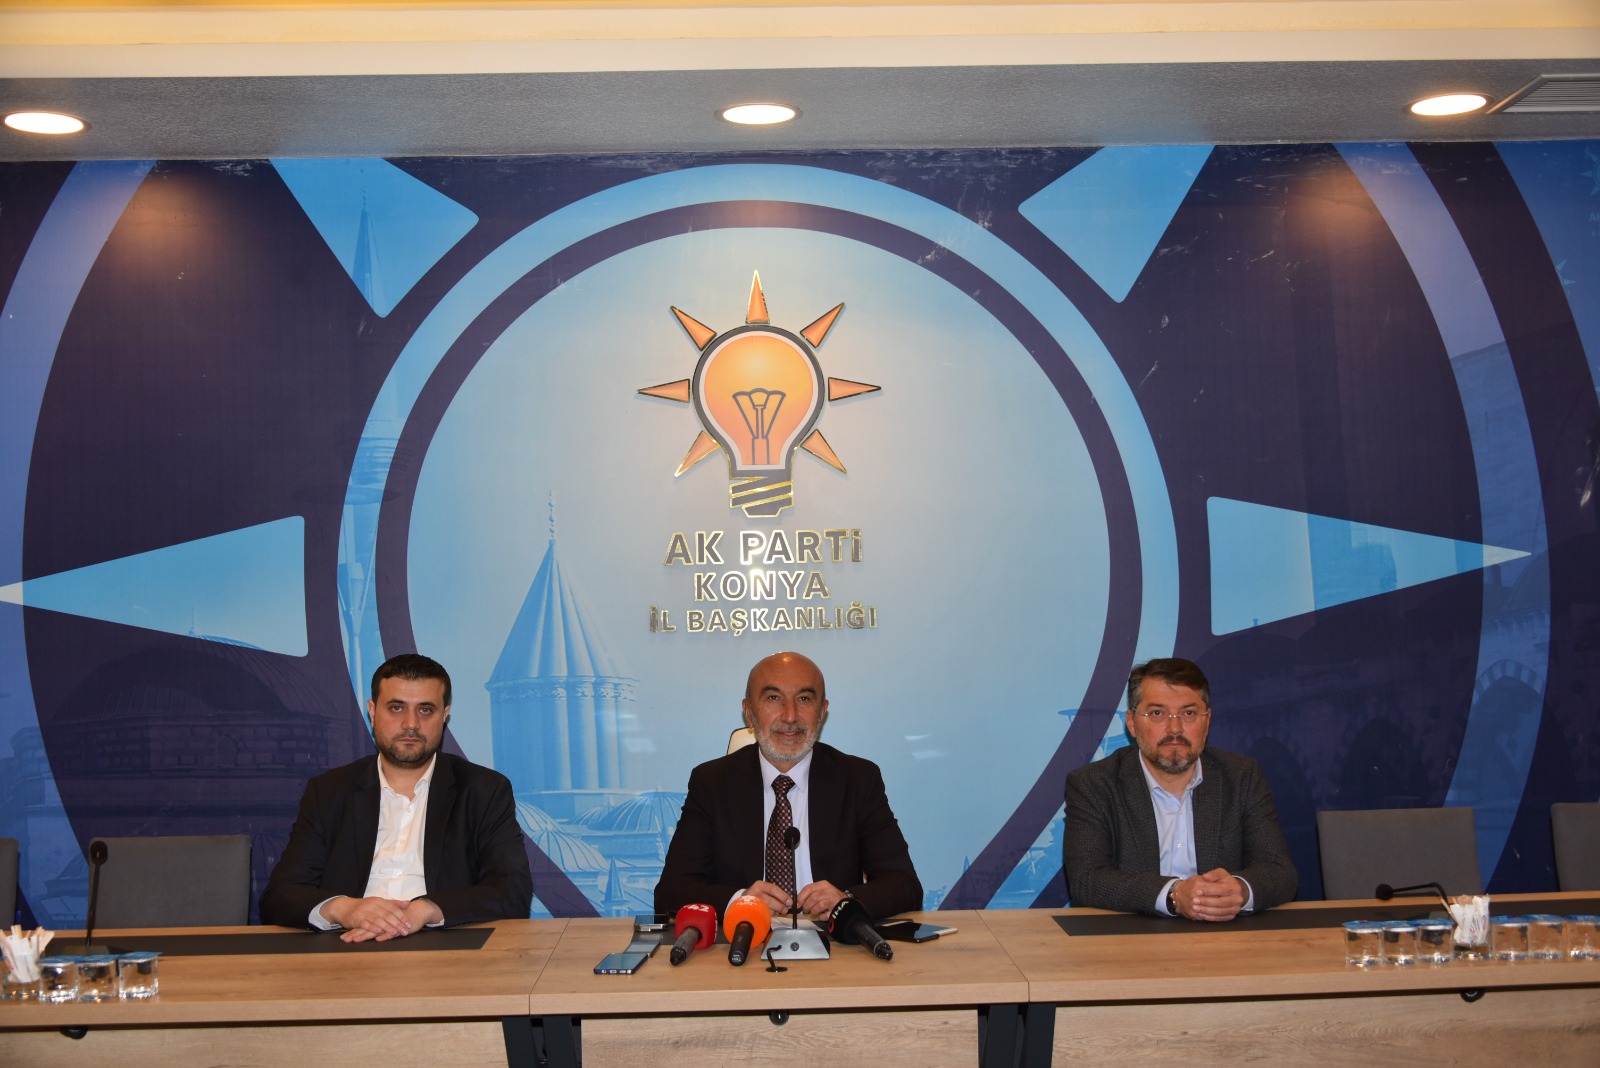 AK Parti Konya İl Başkanı Hasan Angı: Muhalefet dersini alacak!